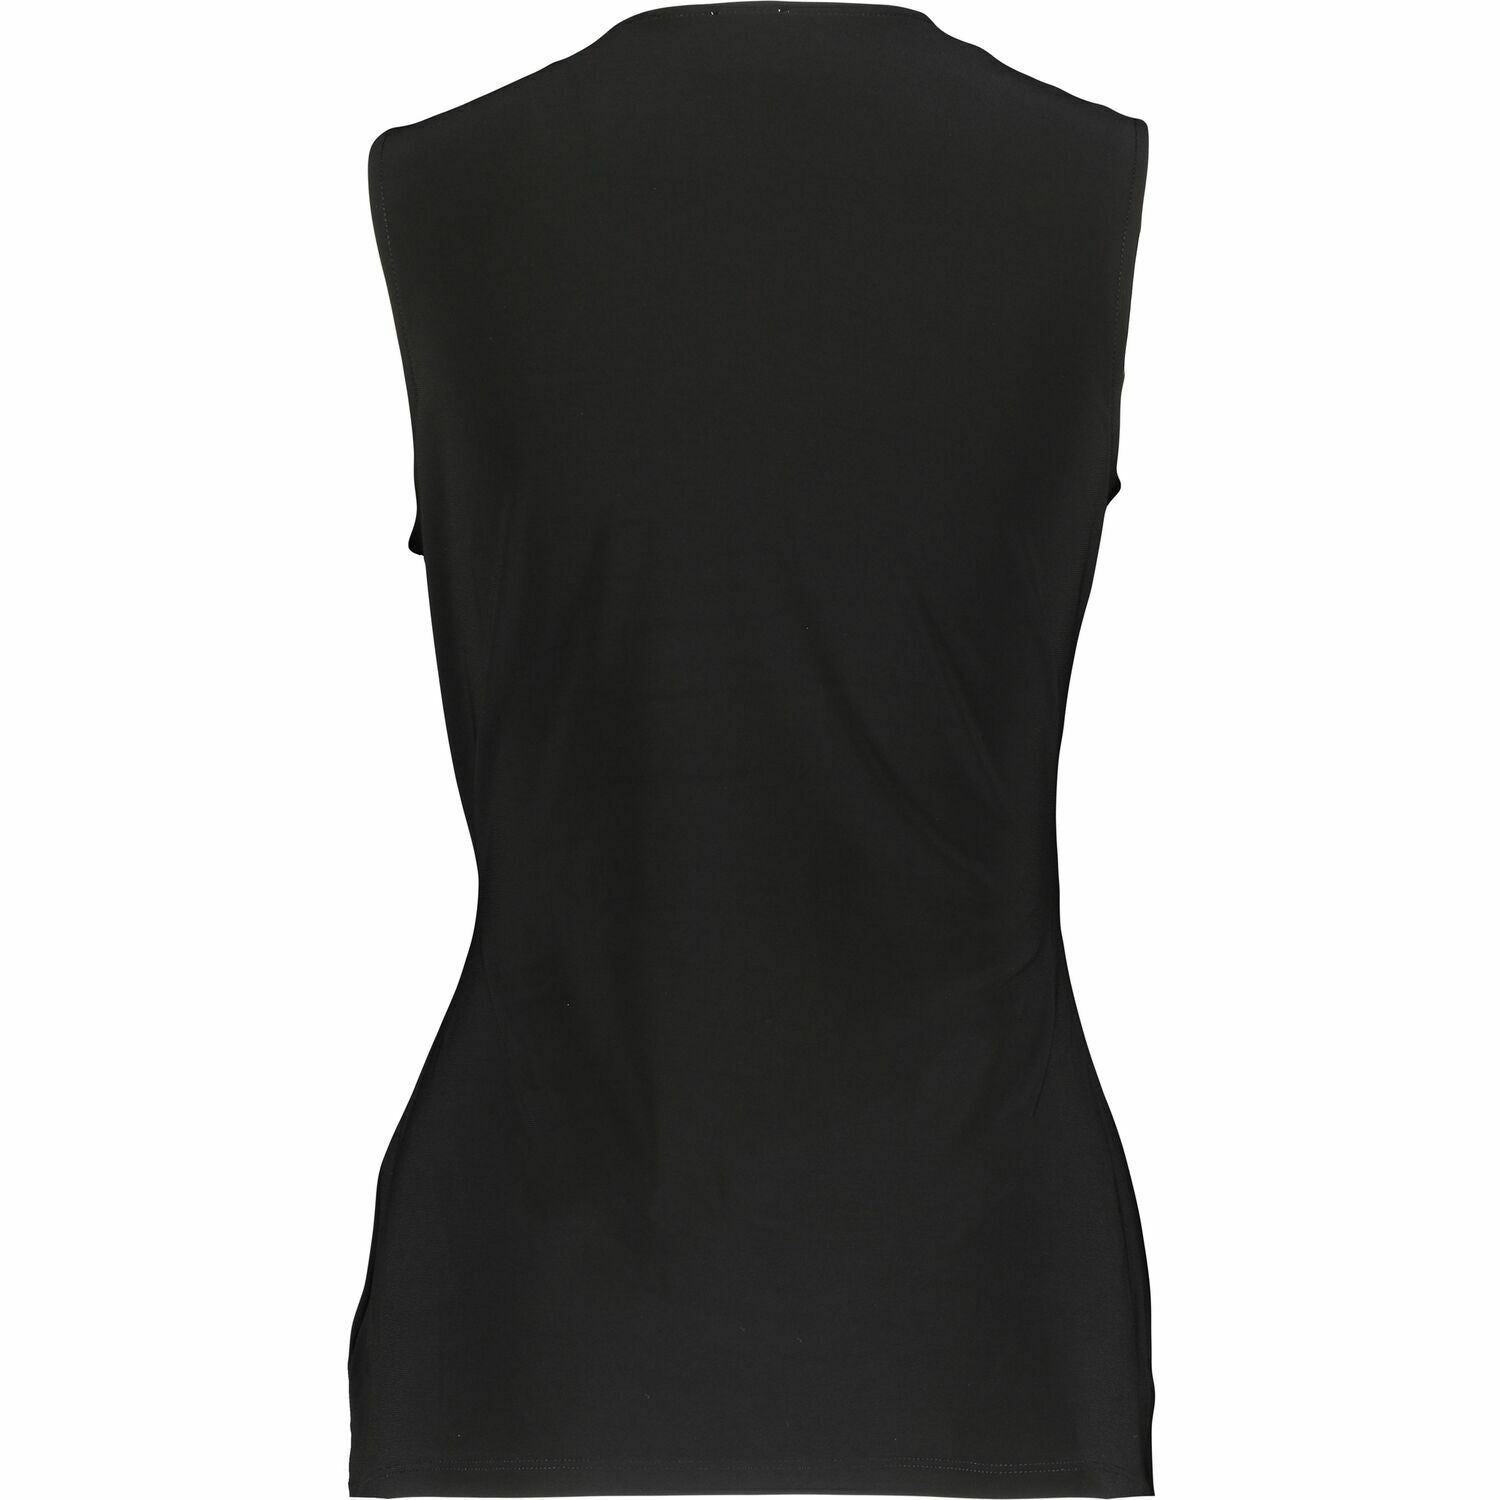 ANNE KLEIN Women's Black Wrap Top, size MEDIUM